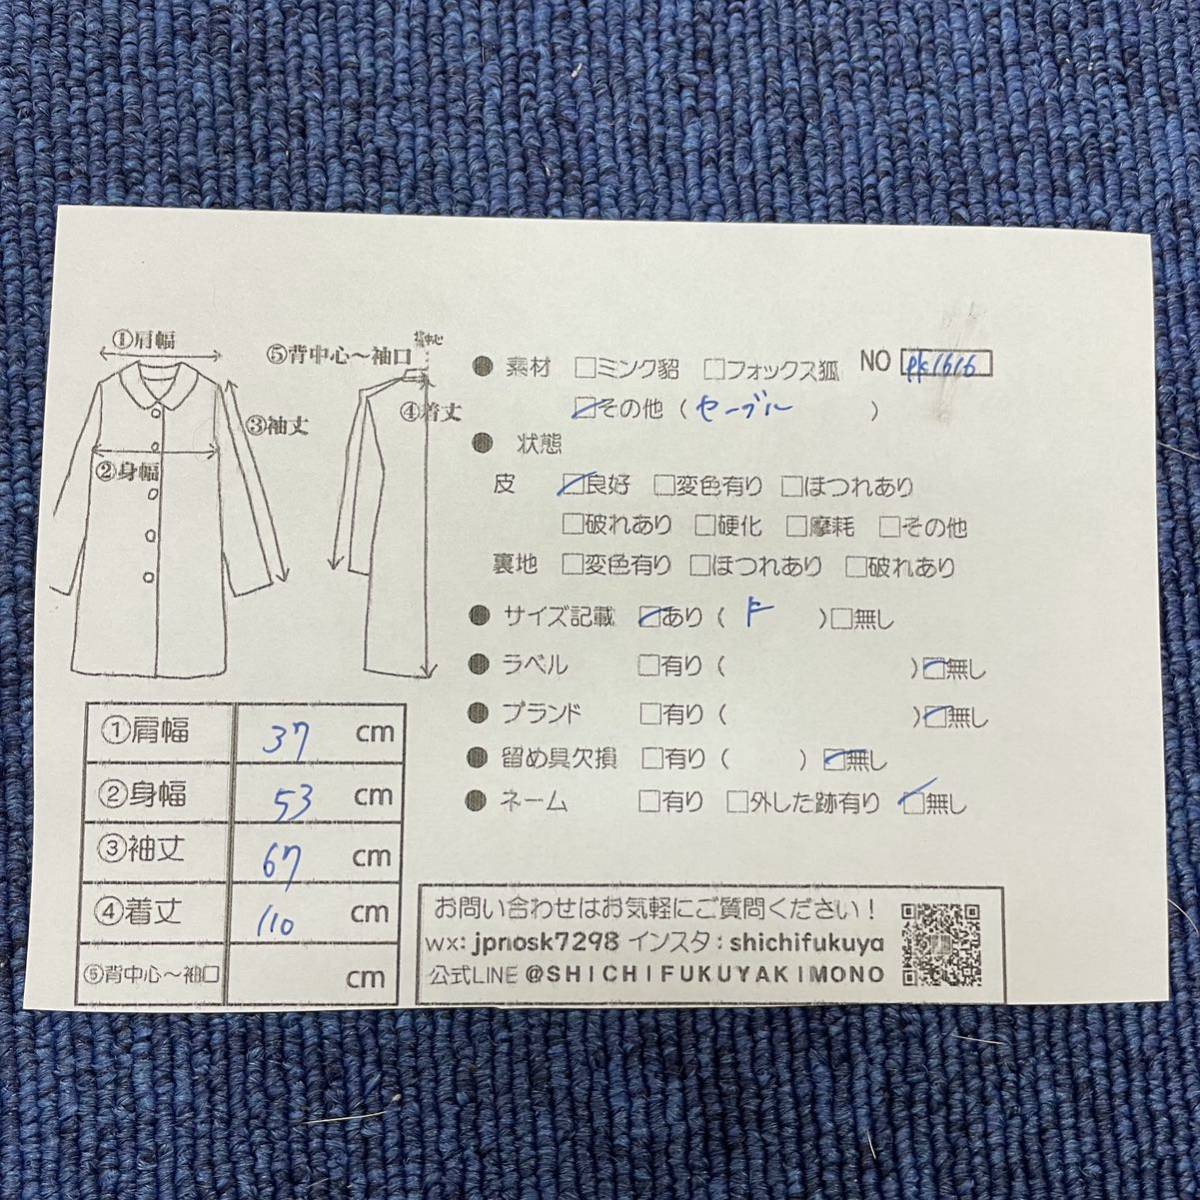 【七福】fk1616 ロングコート カナディアンセーブル CANADIAN SABLE デザインコート セーブルコート セーブル 紫貂 Sable 身丈 約 110cm - 8